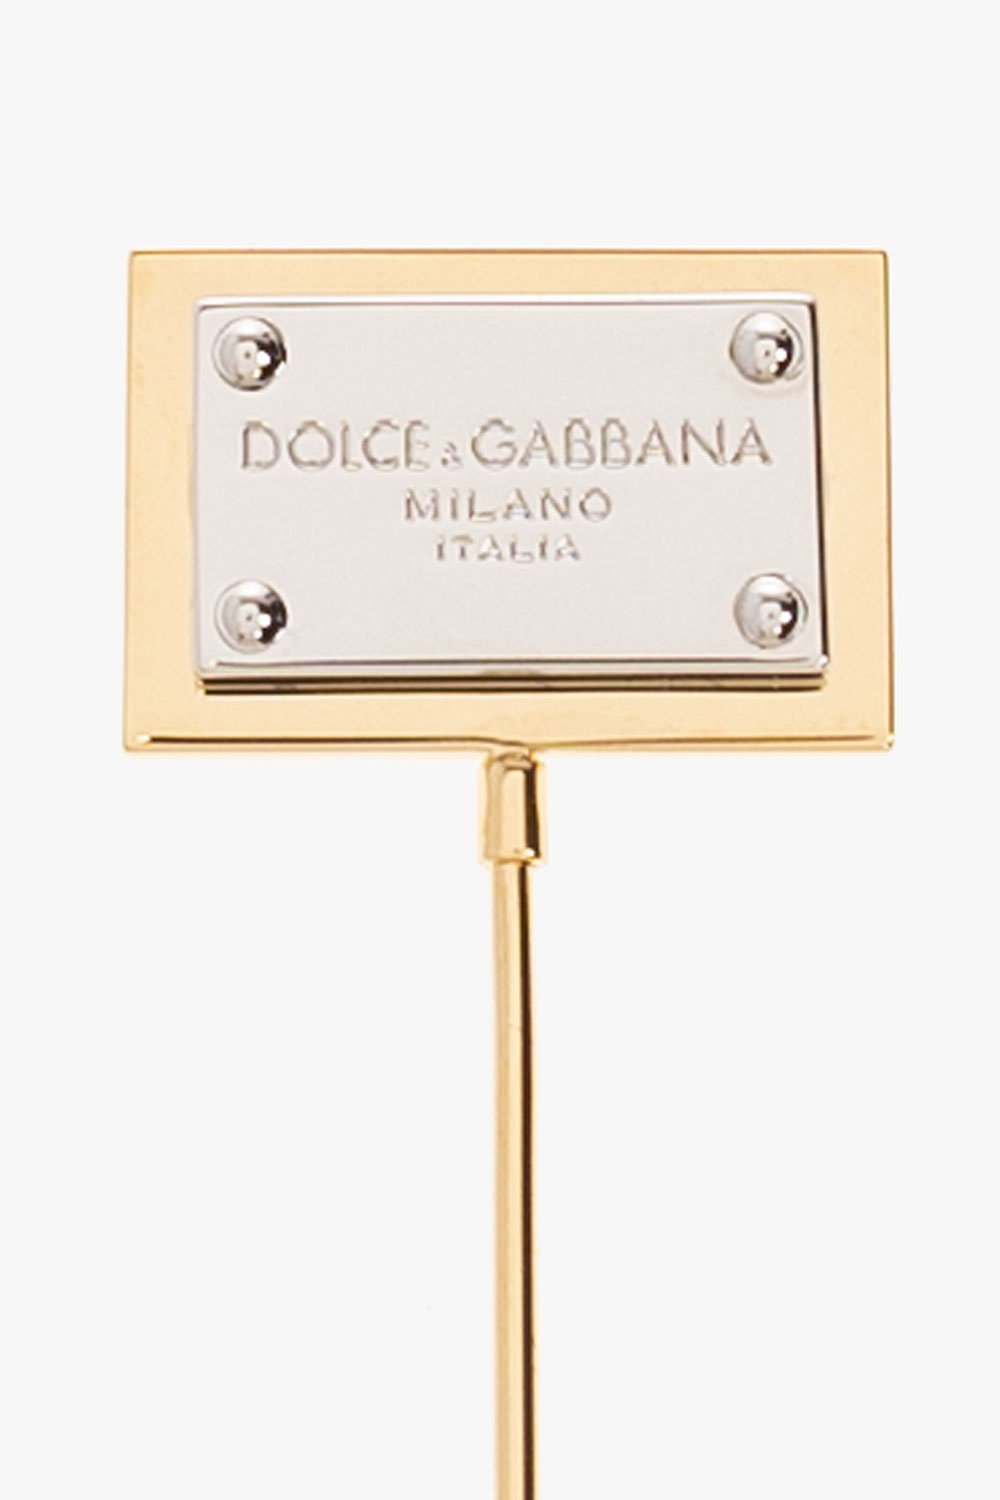 Dolce & Gabbana dolce gabbana gemstone trim blazer item